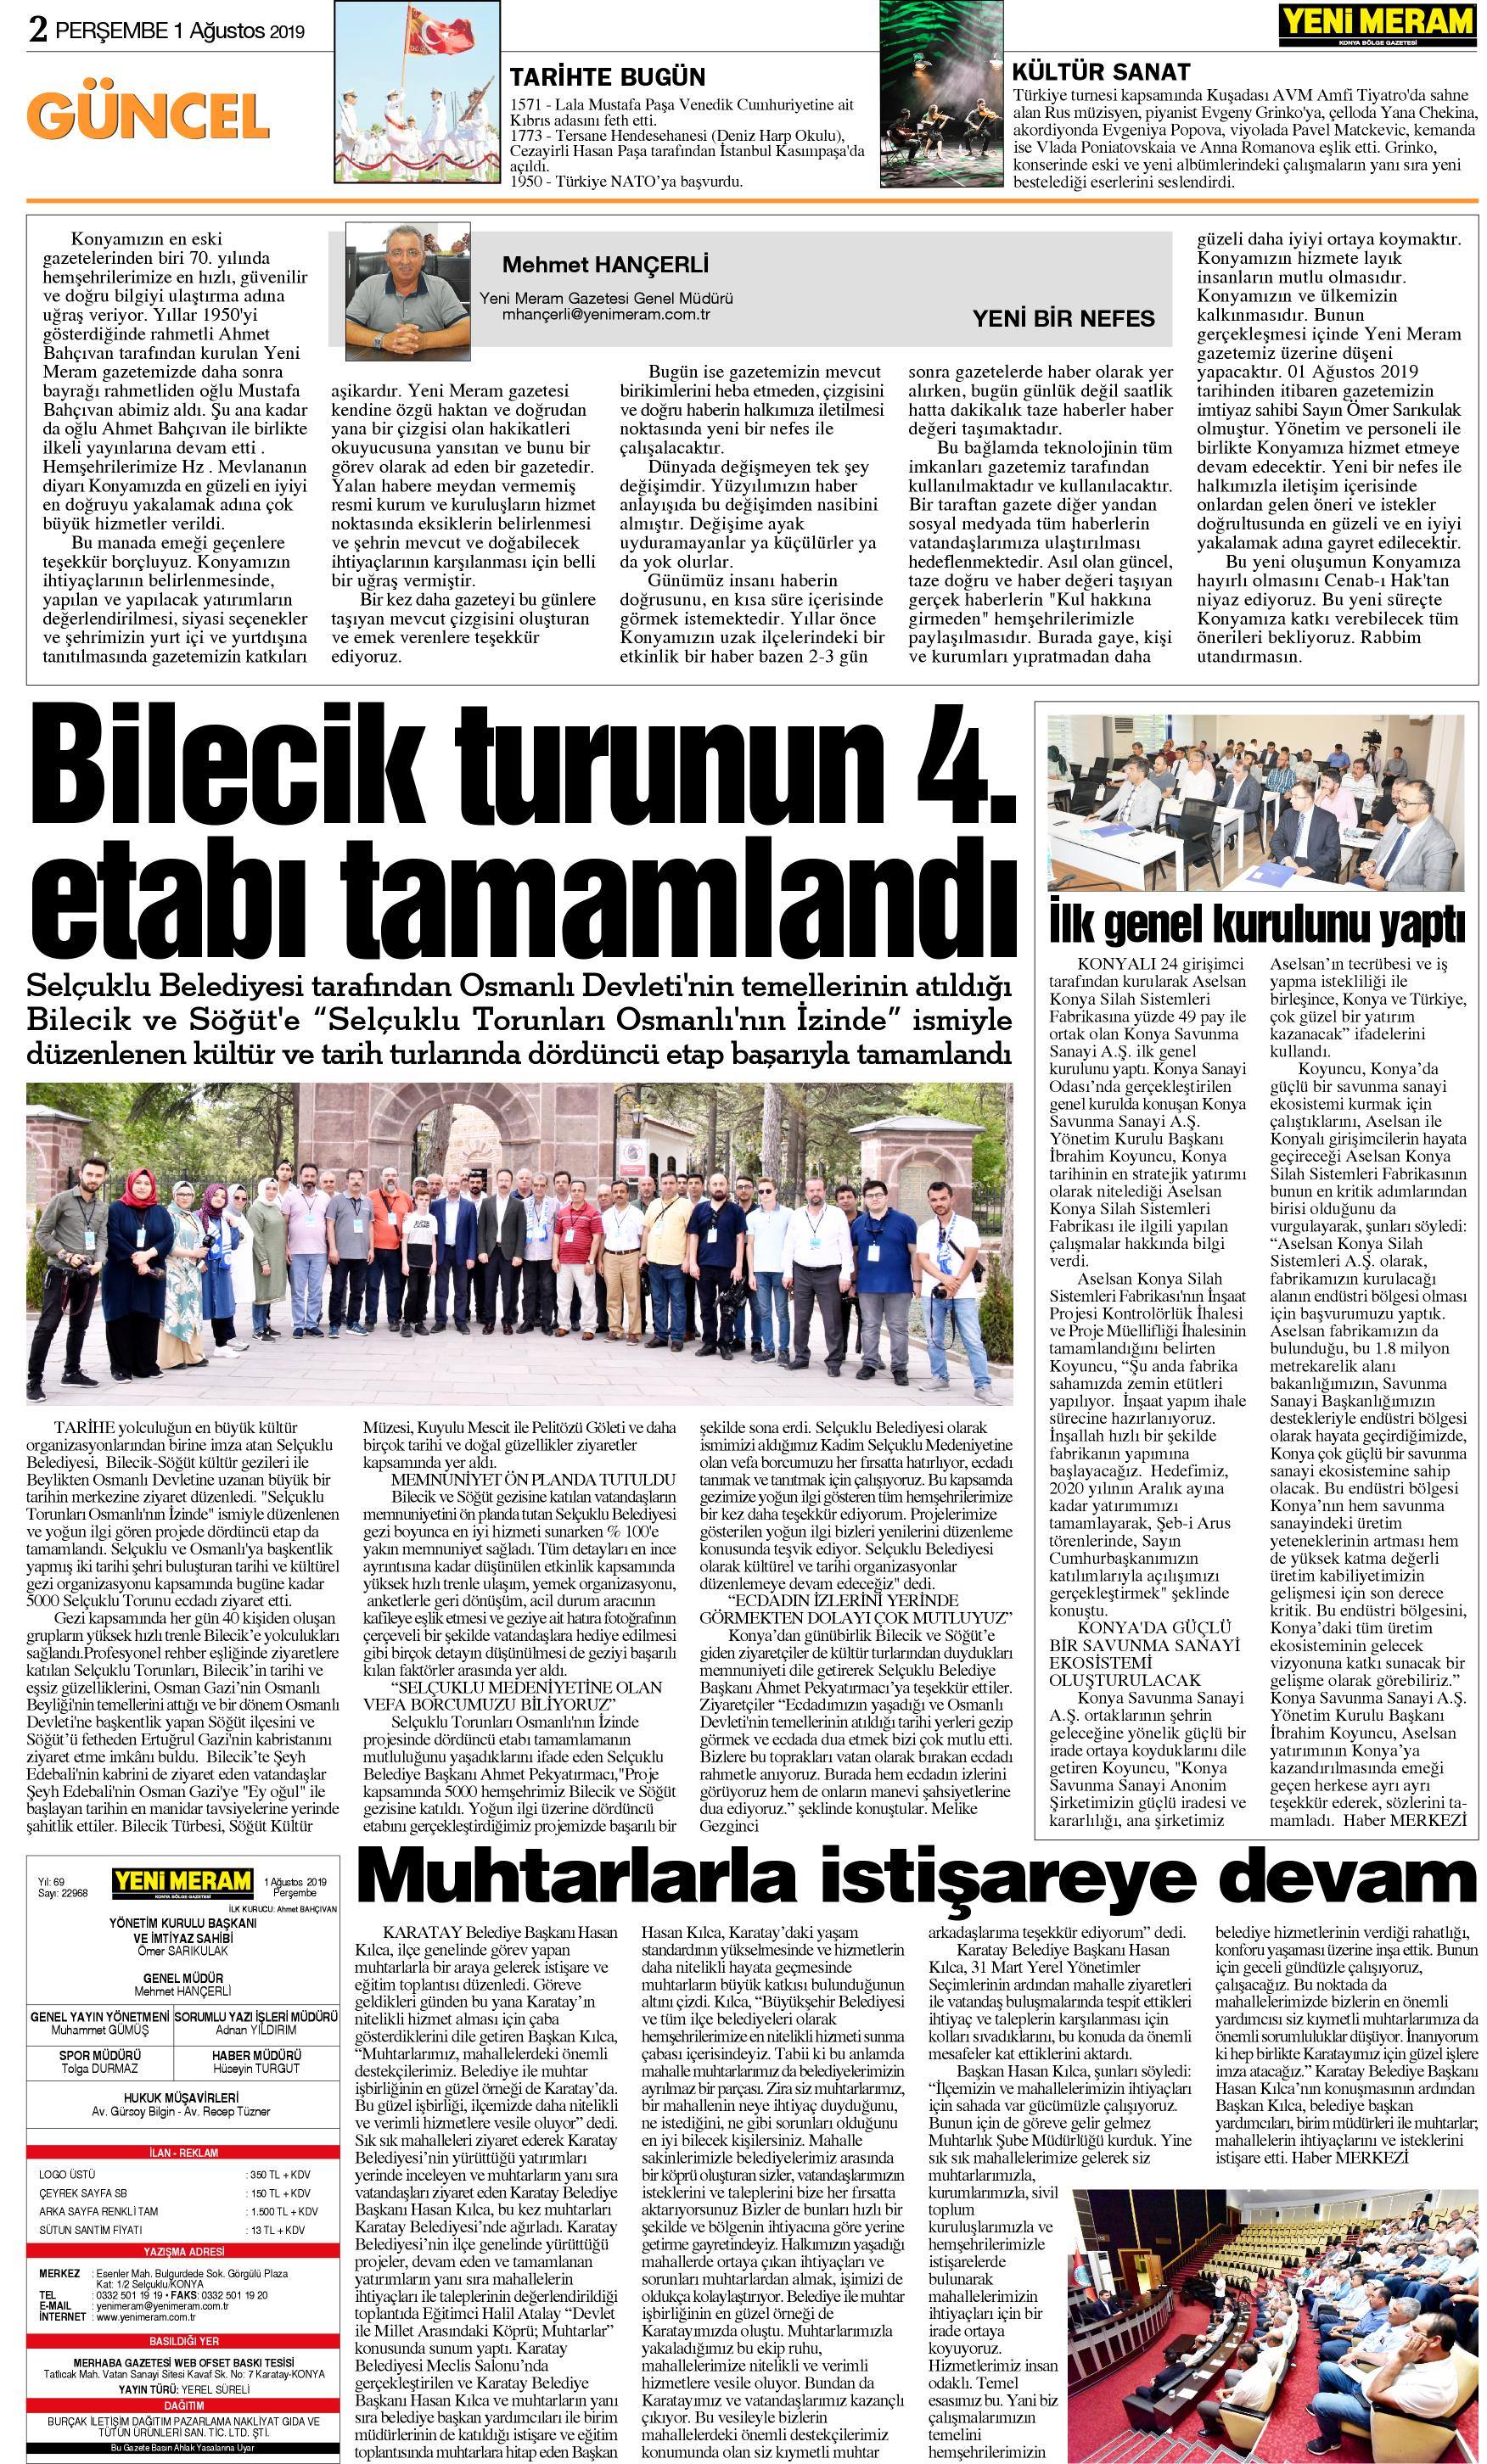 1 Ağustos 2019 Yeni Meram Gazetesi